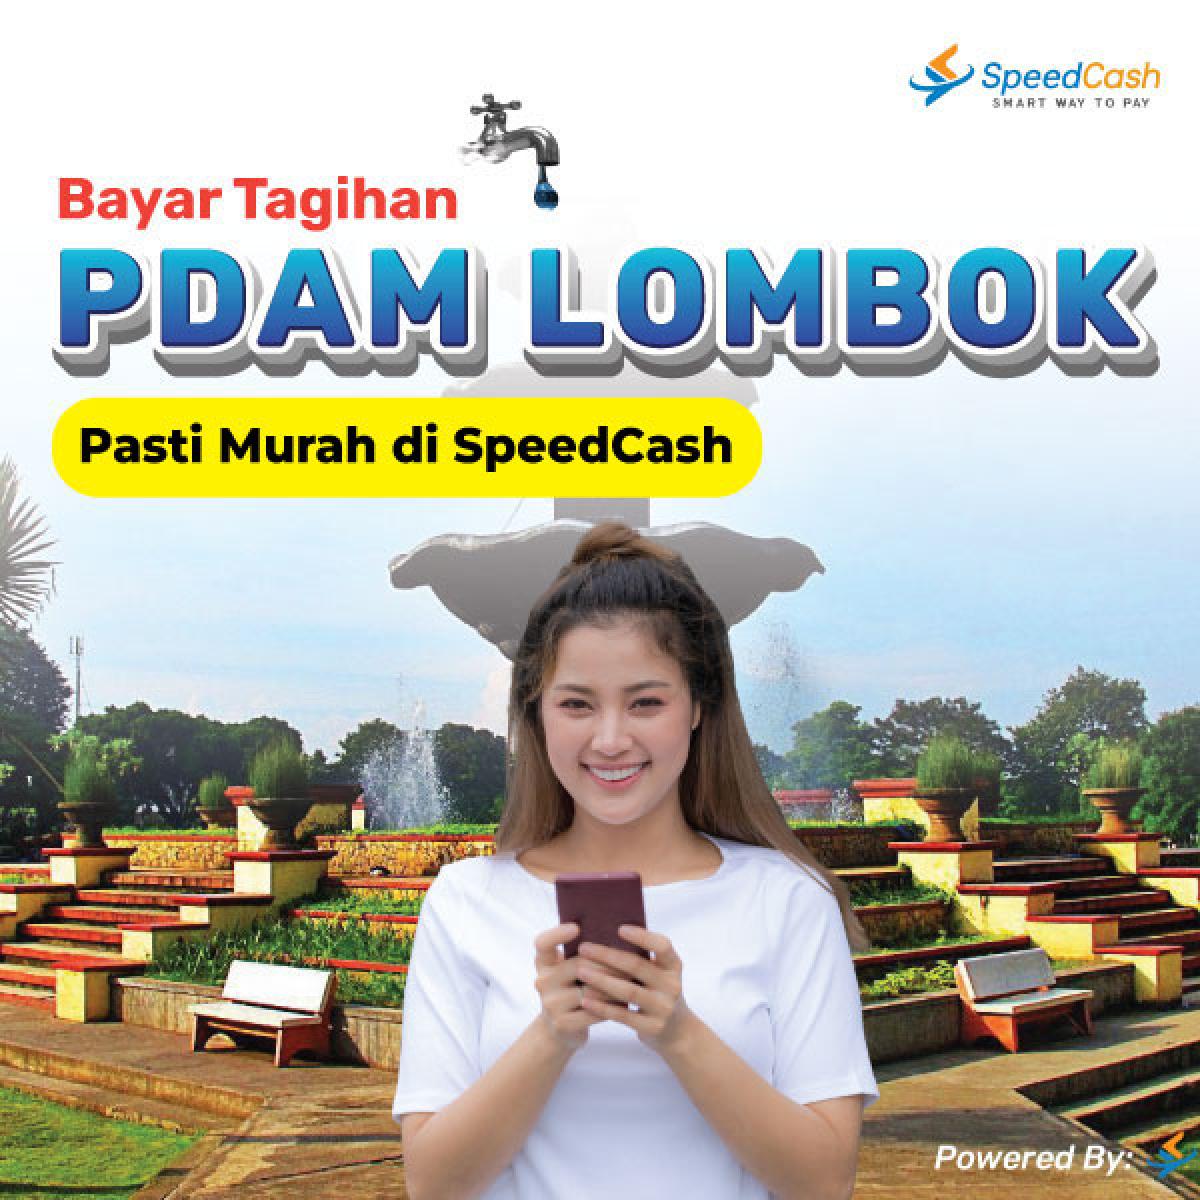 cek tagihan pdam Lombok dan bayar bisa melalui online